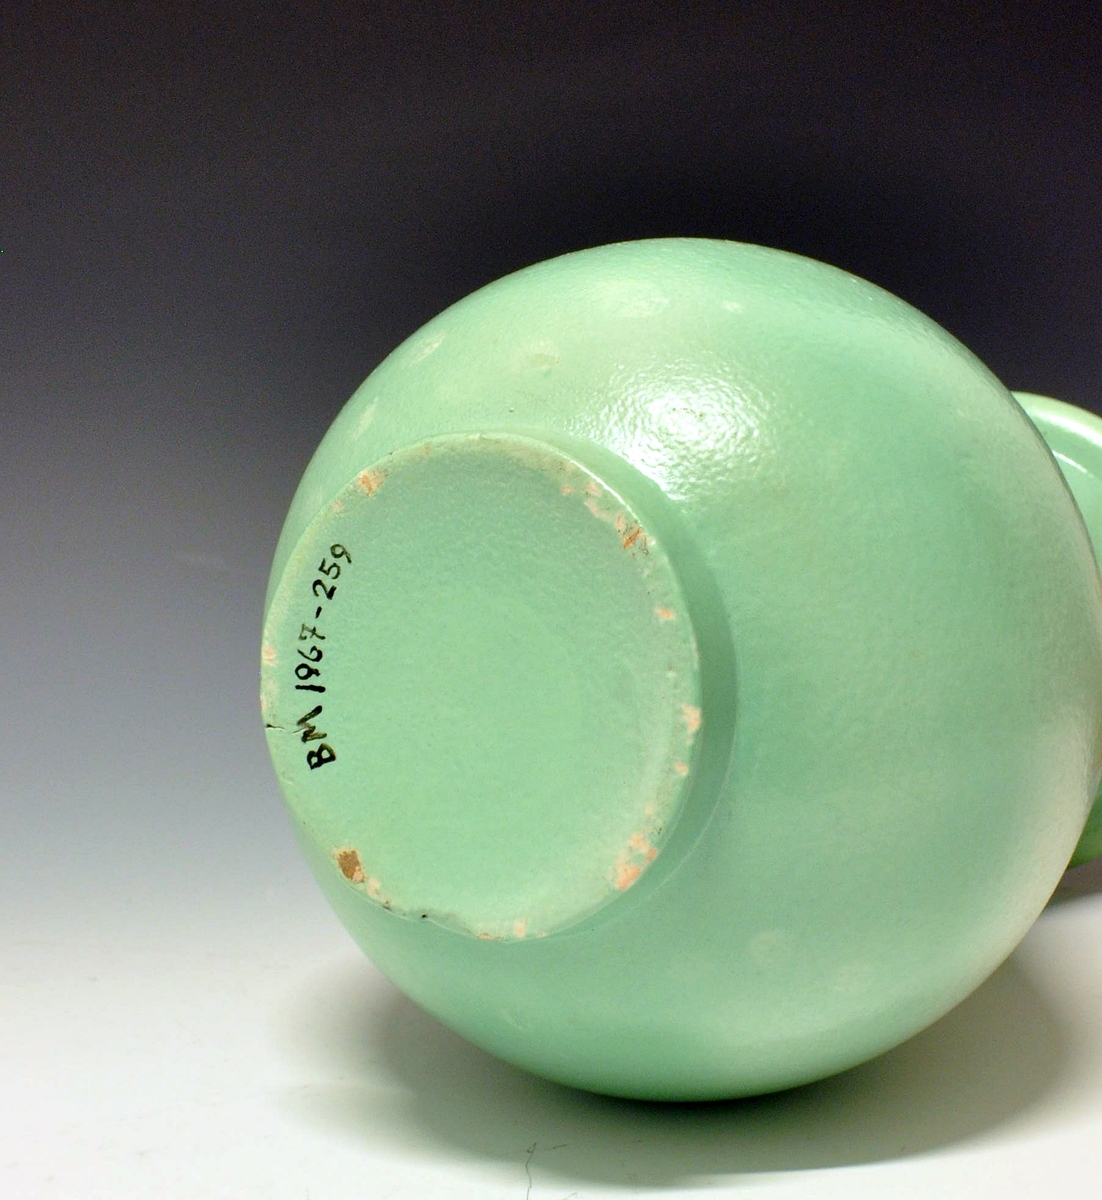 Vase av keramikk, enkel form med ru overflate. Lys grønn glasur. Uten mrk. og sign. Form: Nora Gulbrandsen.